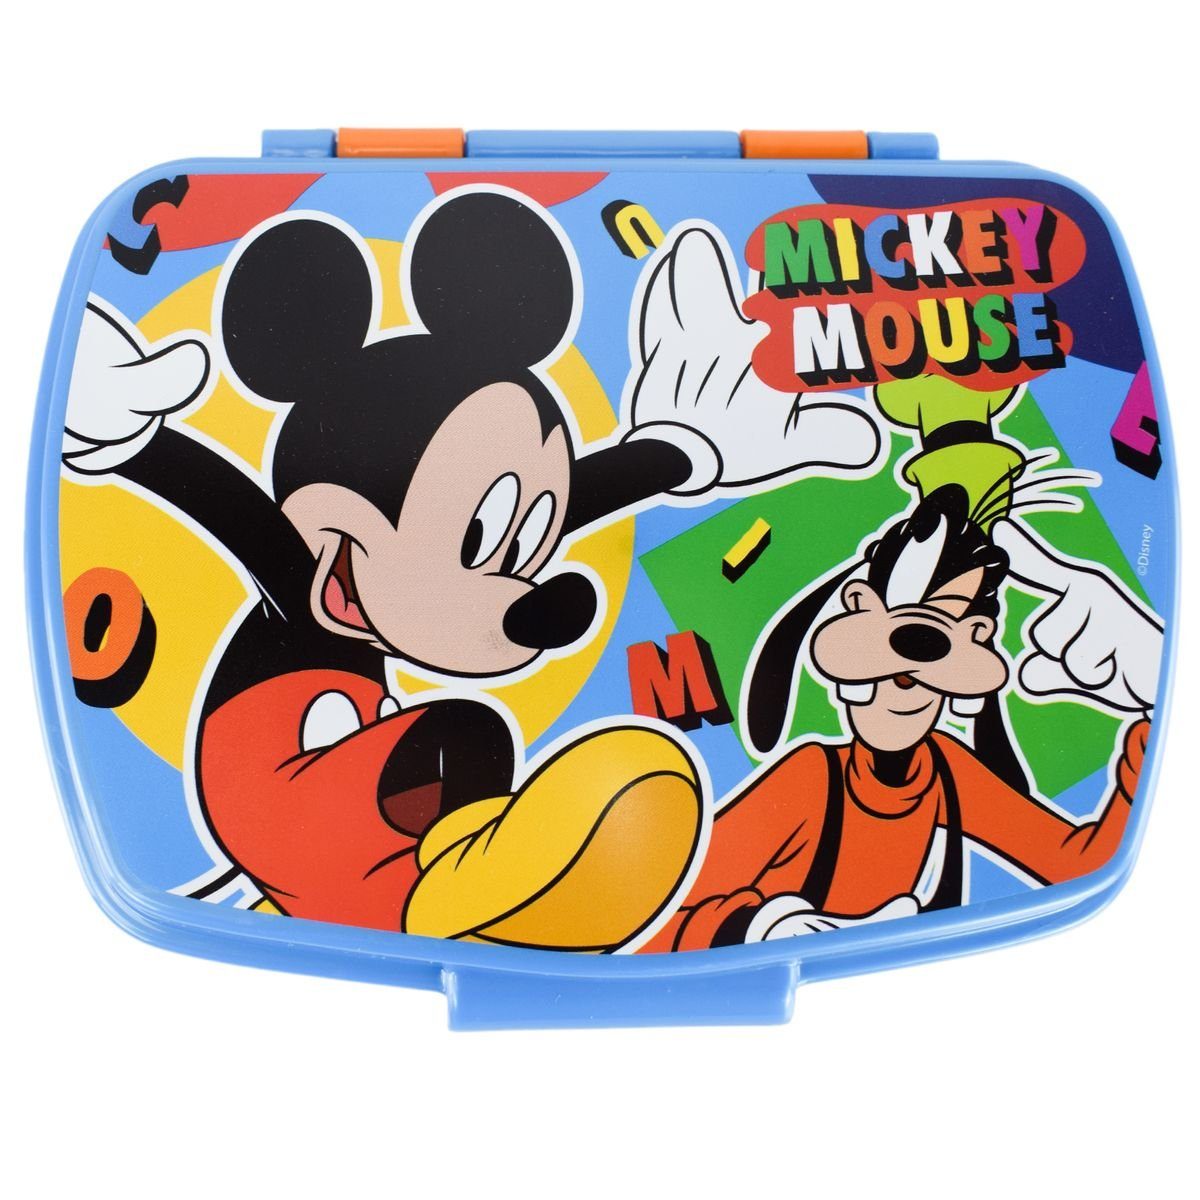 mit Motiv, Stor & Orange Lunchbox authentisches Kunststoff, Goofy Lunchbox Mouse Disney in Design fröhlichem Mickey